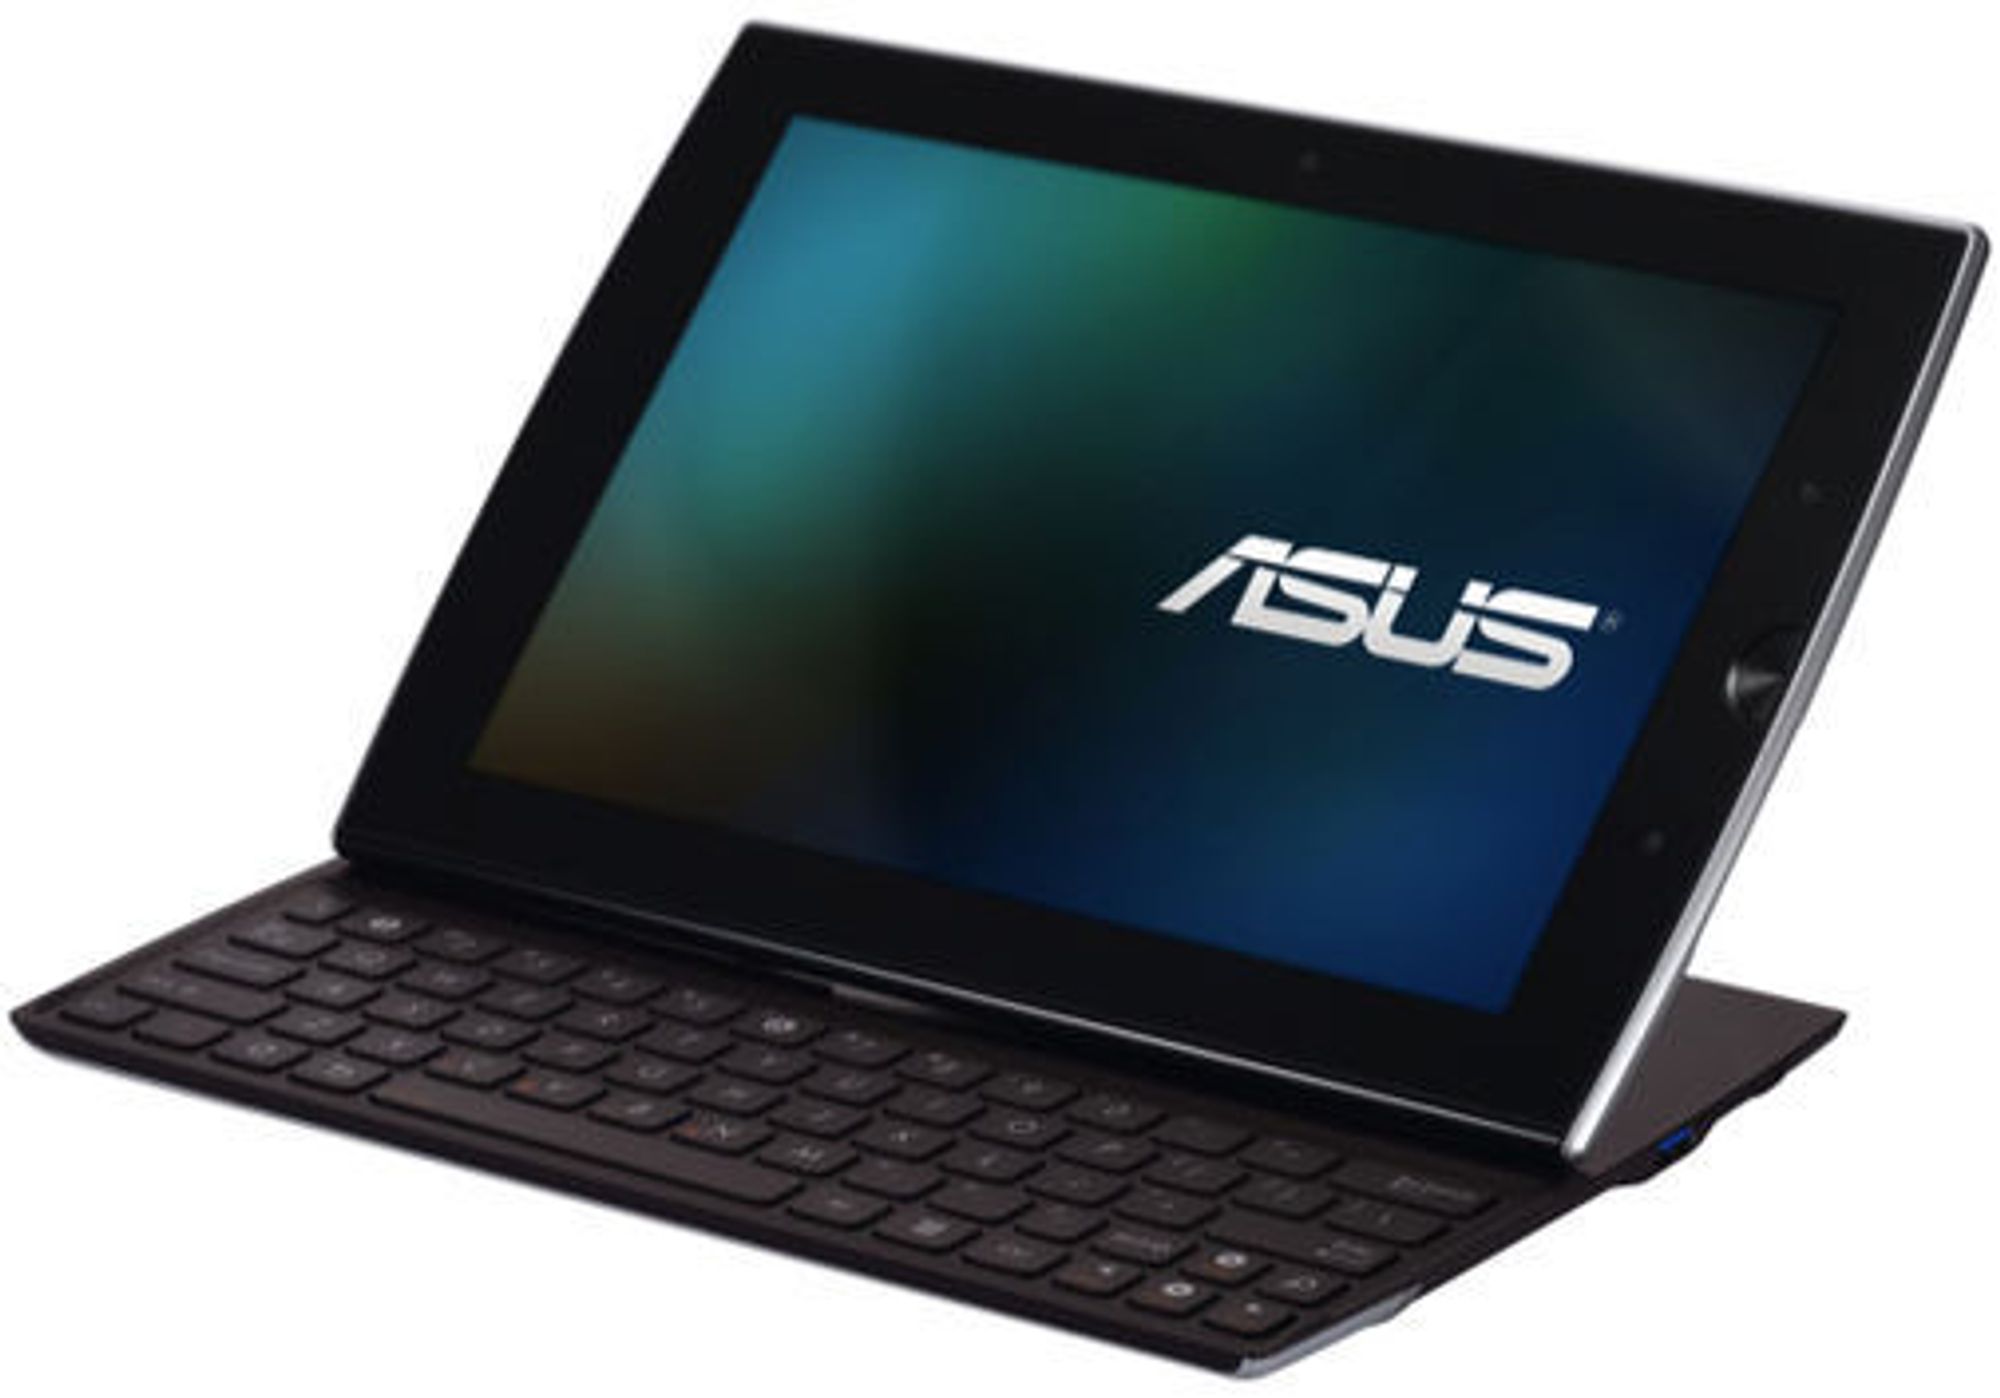 Asus Eee Pad Slider har et tastatur som kan felles inn bak skjermen.